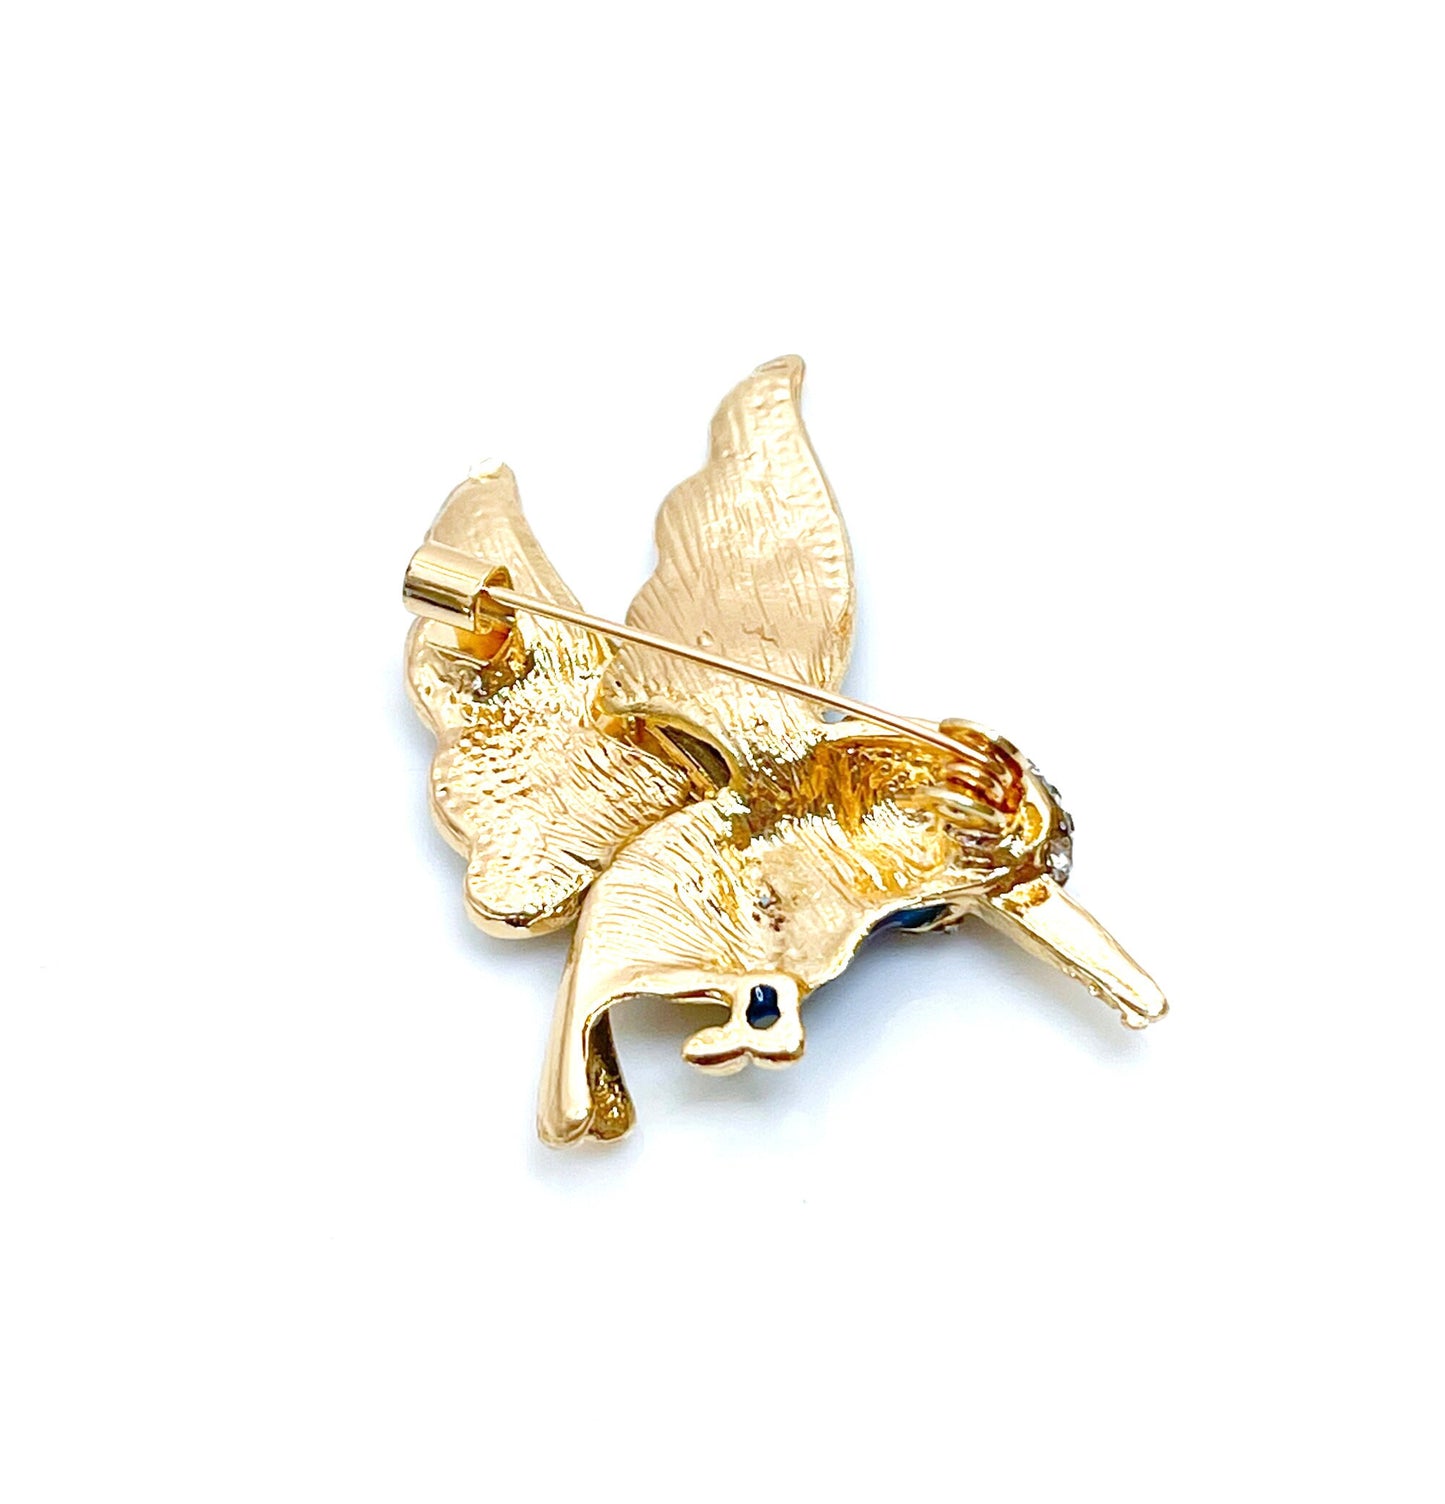 Teal Hummingbird Brooch | Gift for Bird Lovers | Blue and Gold Hummingbird | Cute Bird Pin